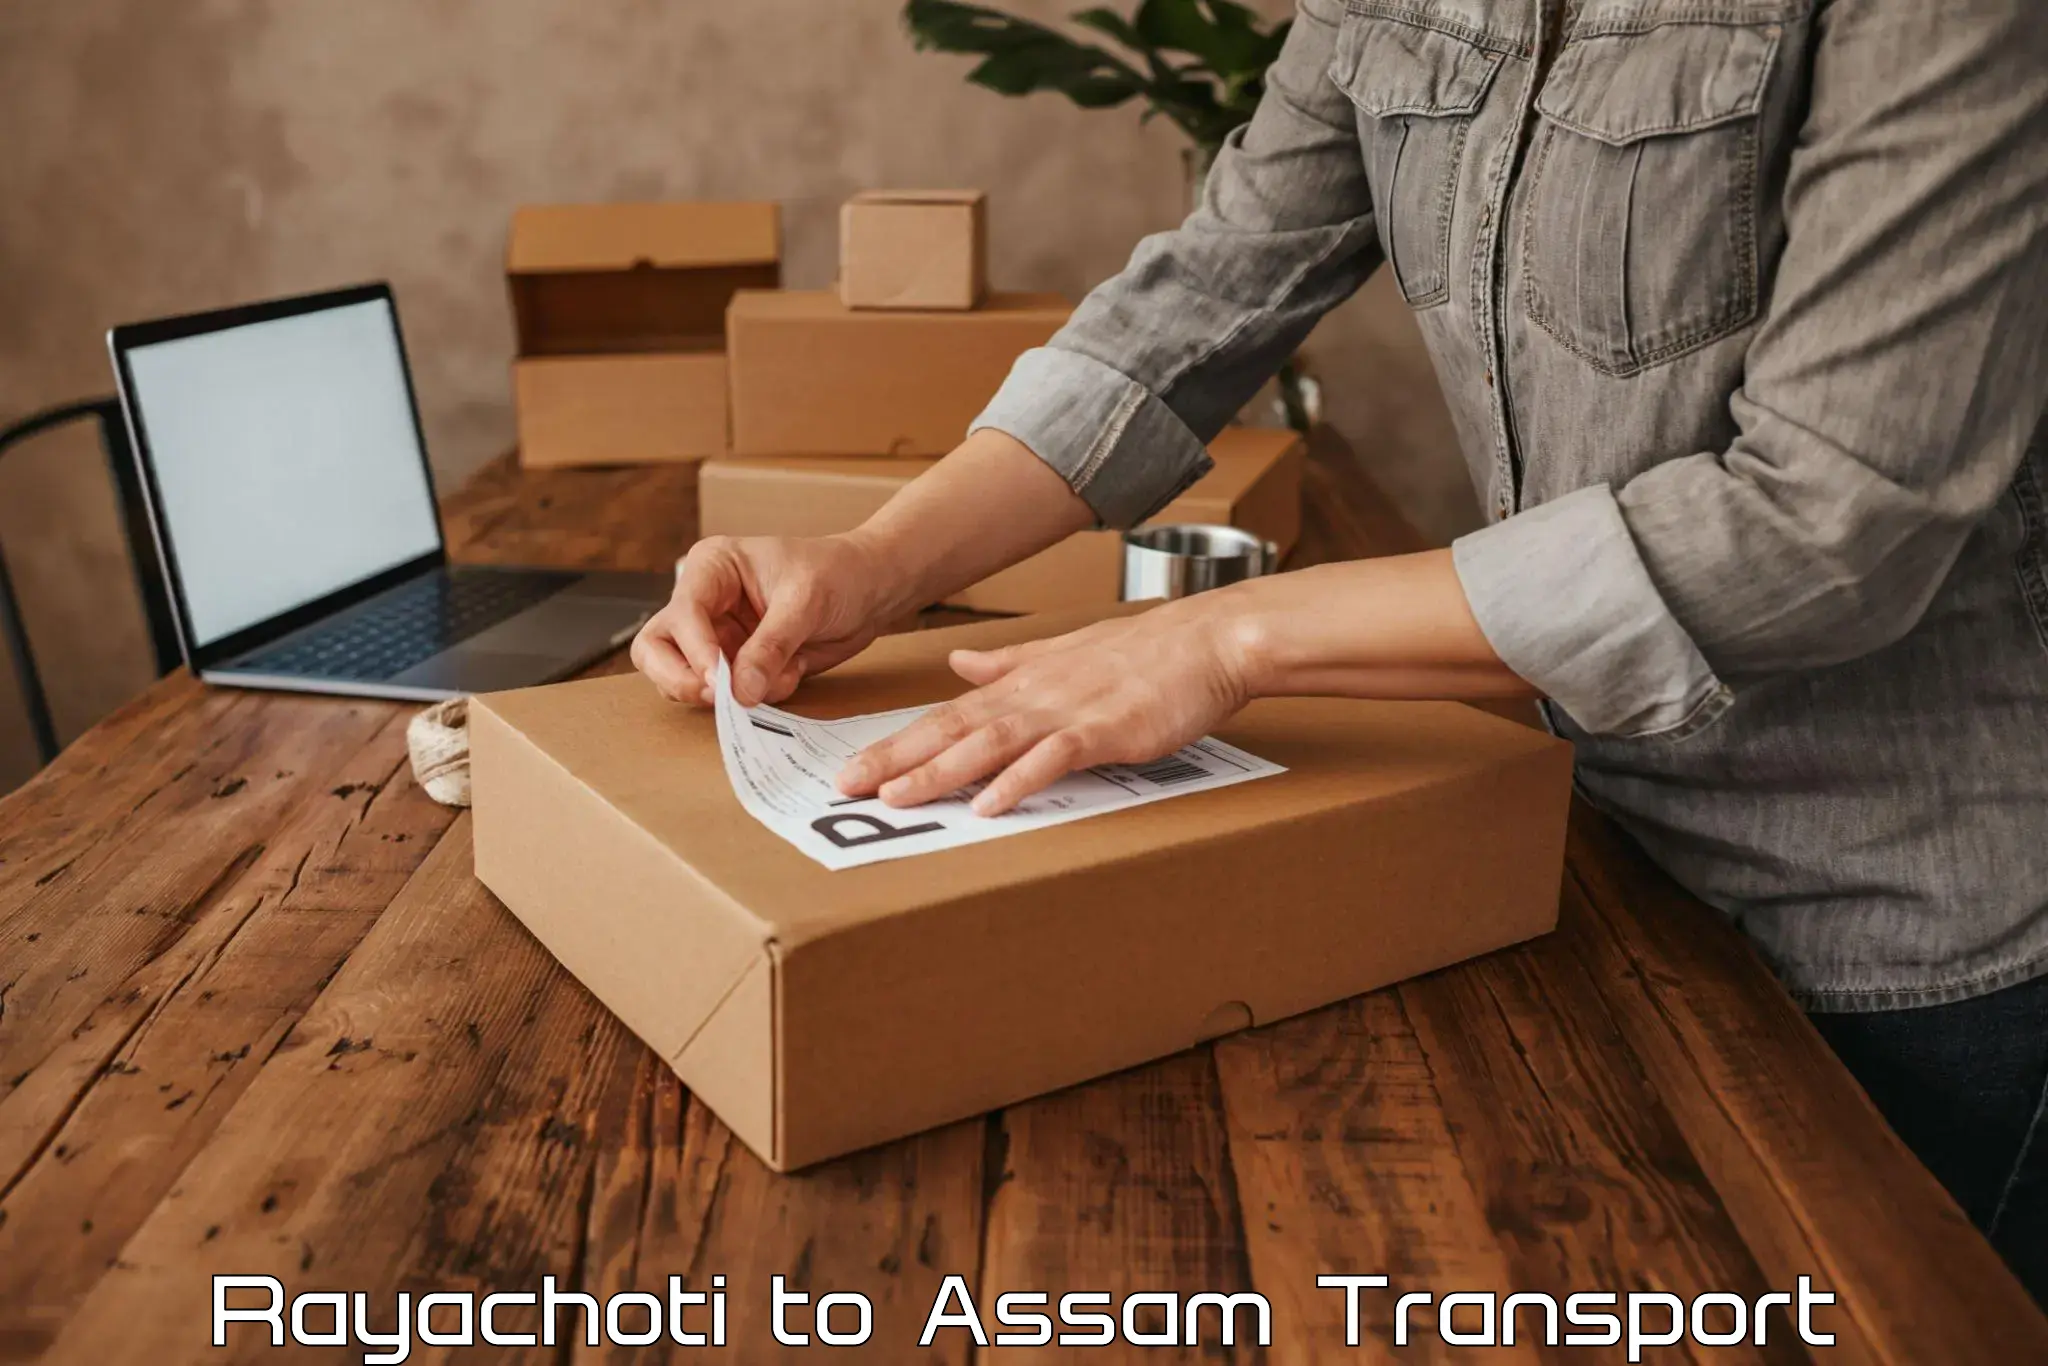 Transport in sharing Rayachoti to Assam